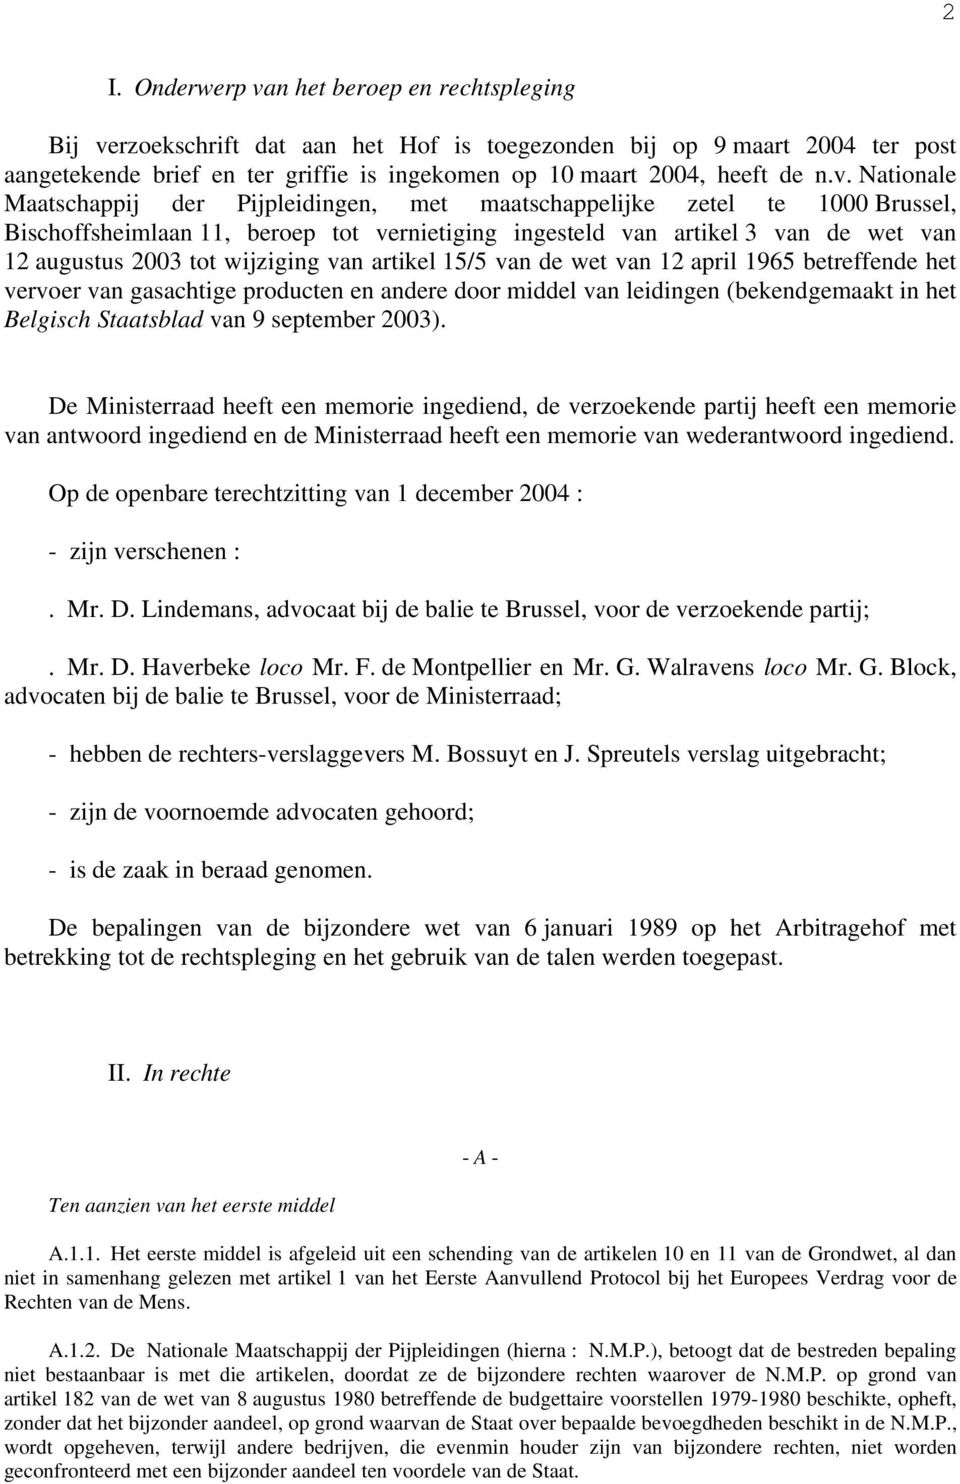 wijziging van artikel 15/5 van de wet van 12 april 1965 betreffende het vervoer van gasachtige producten en andere door middel van leidingen (bekendgemaakt in het Belgisch Staatsblad van 9 september